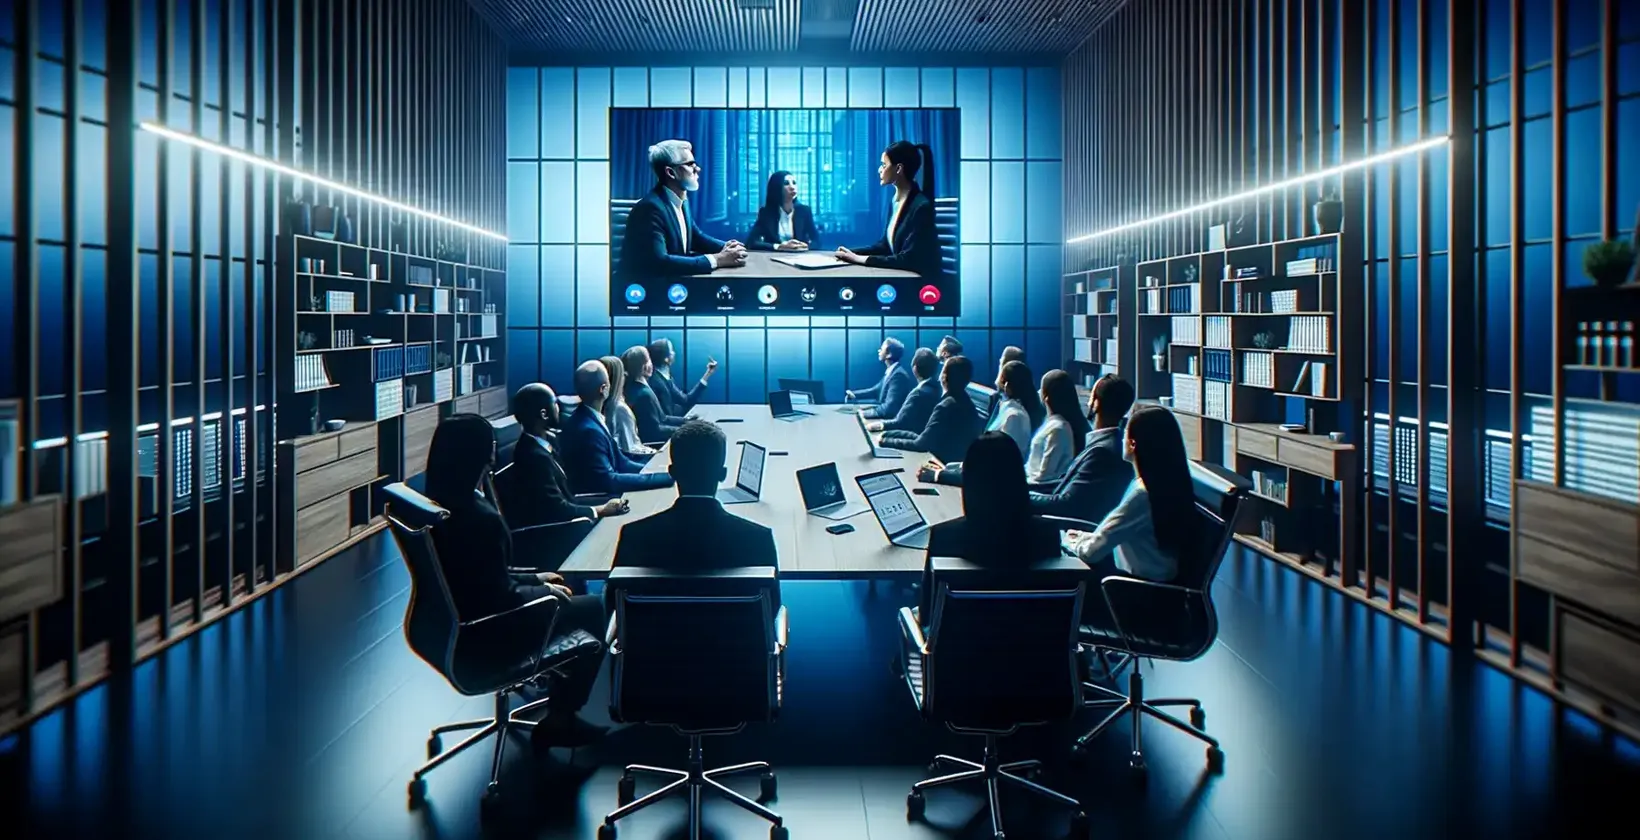 Η μεταγραφή της συνάντησης παρατηρείται καθώς οι επαγγελματίες σε ένα μπλε φωτισμένο δωμάτιο παρακολουθούν μια βιντεοκλήση τριών ατόμων.